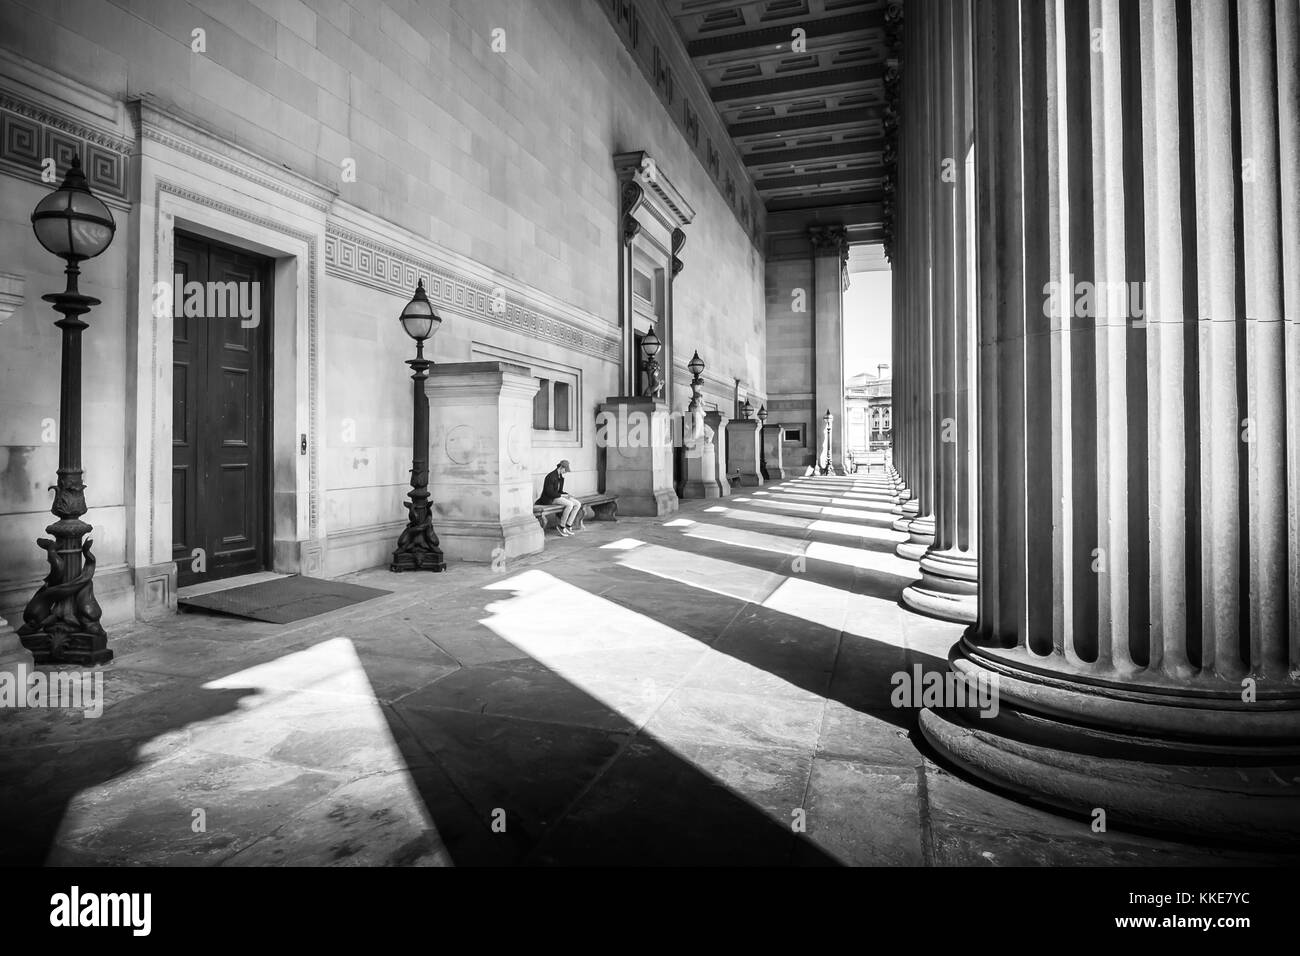 Licht und Schatten spielen auf der Säulen und die Architektur von St. George's Hall in lverpool Lime Street, North West England, mit einem Mann auf der integrierten Bank am oberen Ende der Stufen sitzend, auf einem schönen Sommer sonnigen Tag.. Stockfoto